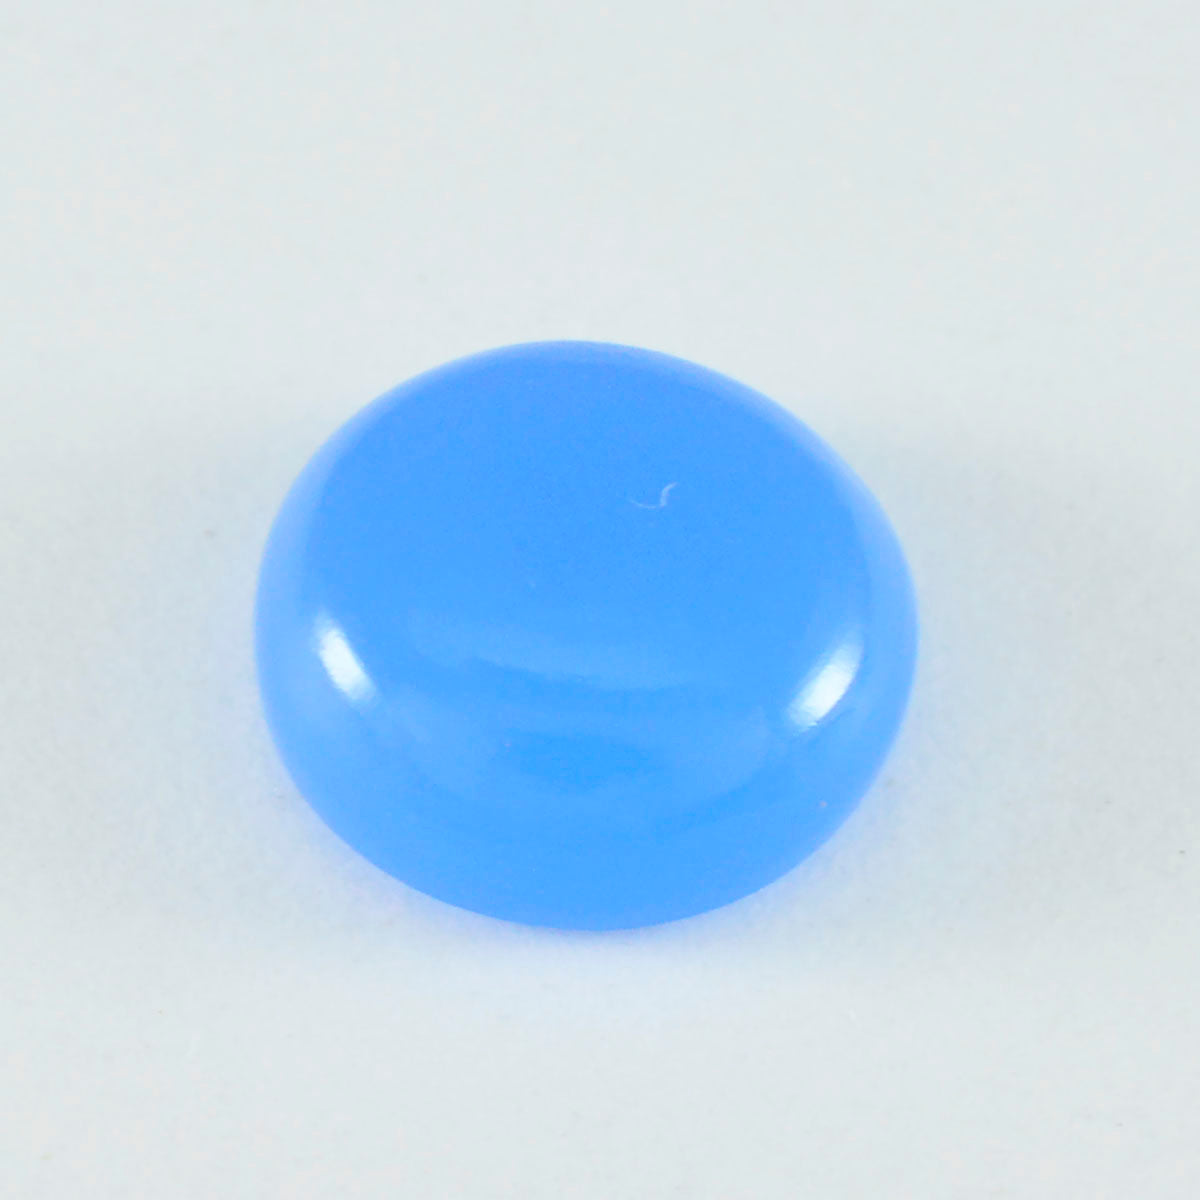 riyogems 1 st blå kalcedon cabochon 10x10 mm rund form ganska kvalitet lösa ädelstenar